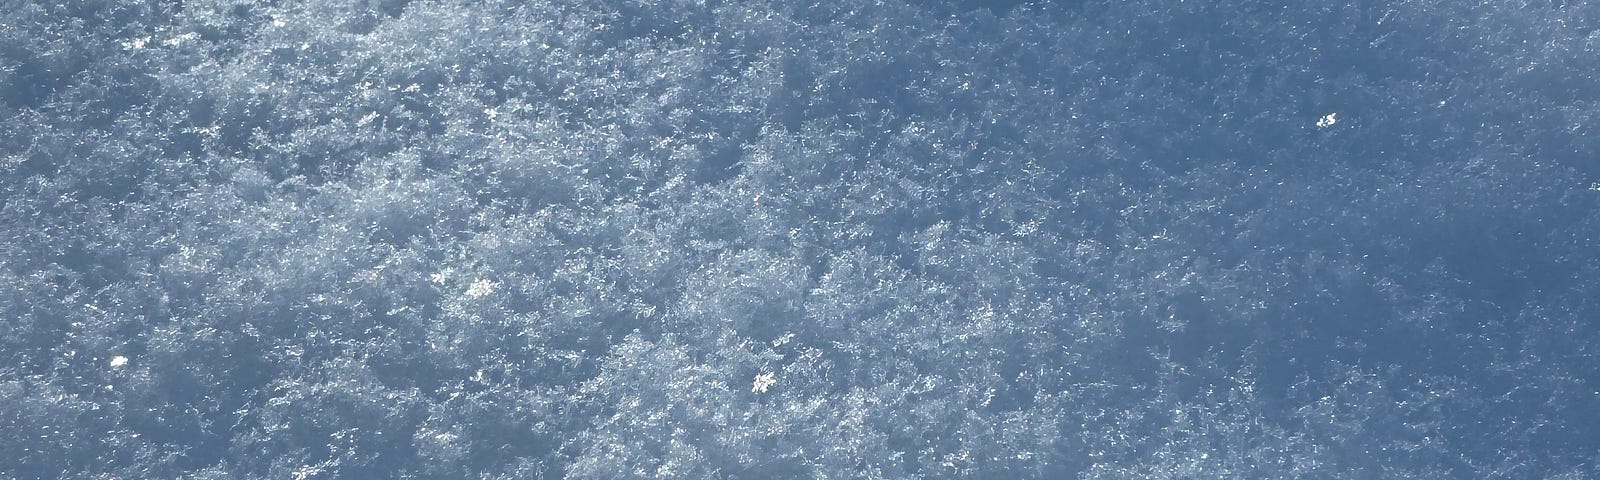 freshly fallen snow crystals